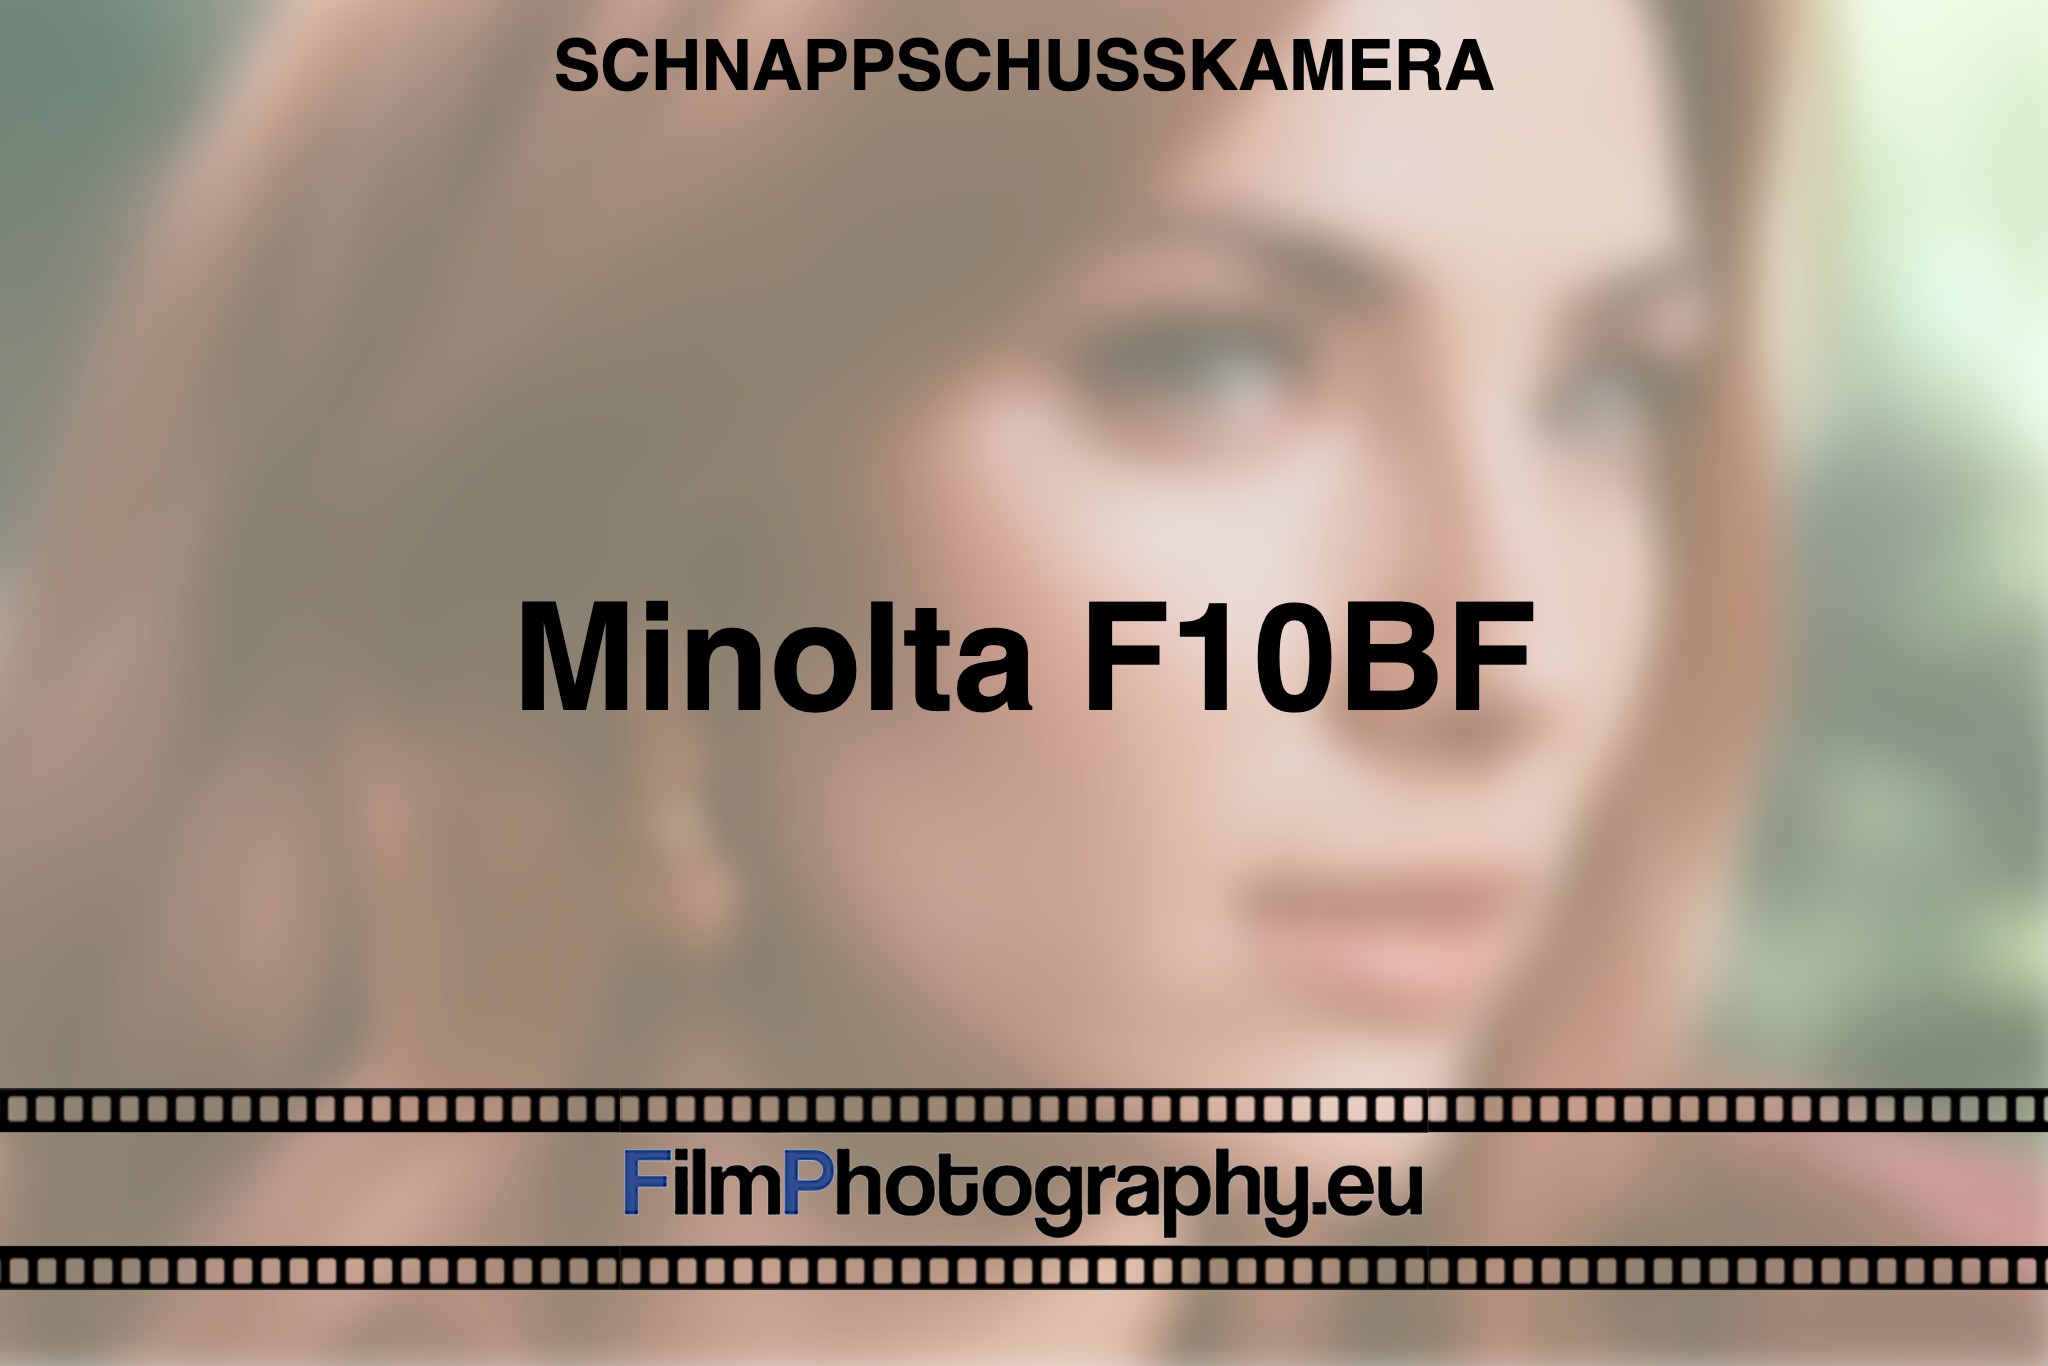 minolta-f10bf-schnappschusskamera-bnv